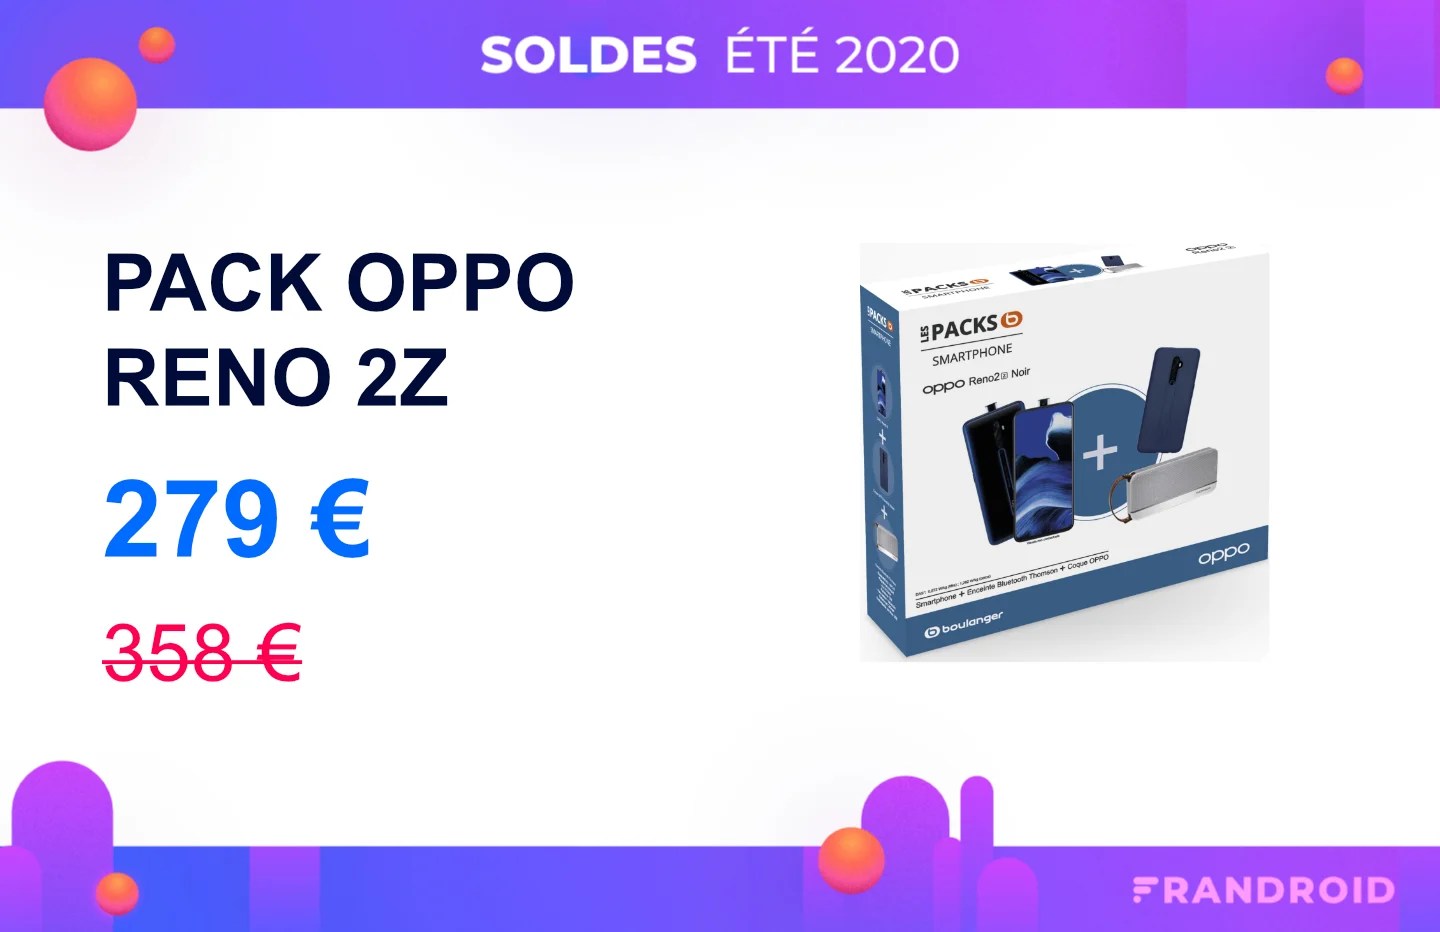 L’Oppo Reno 2Z (en pack avec une enceinte) est à moins de 280 euros